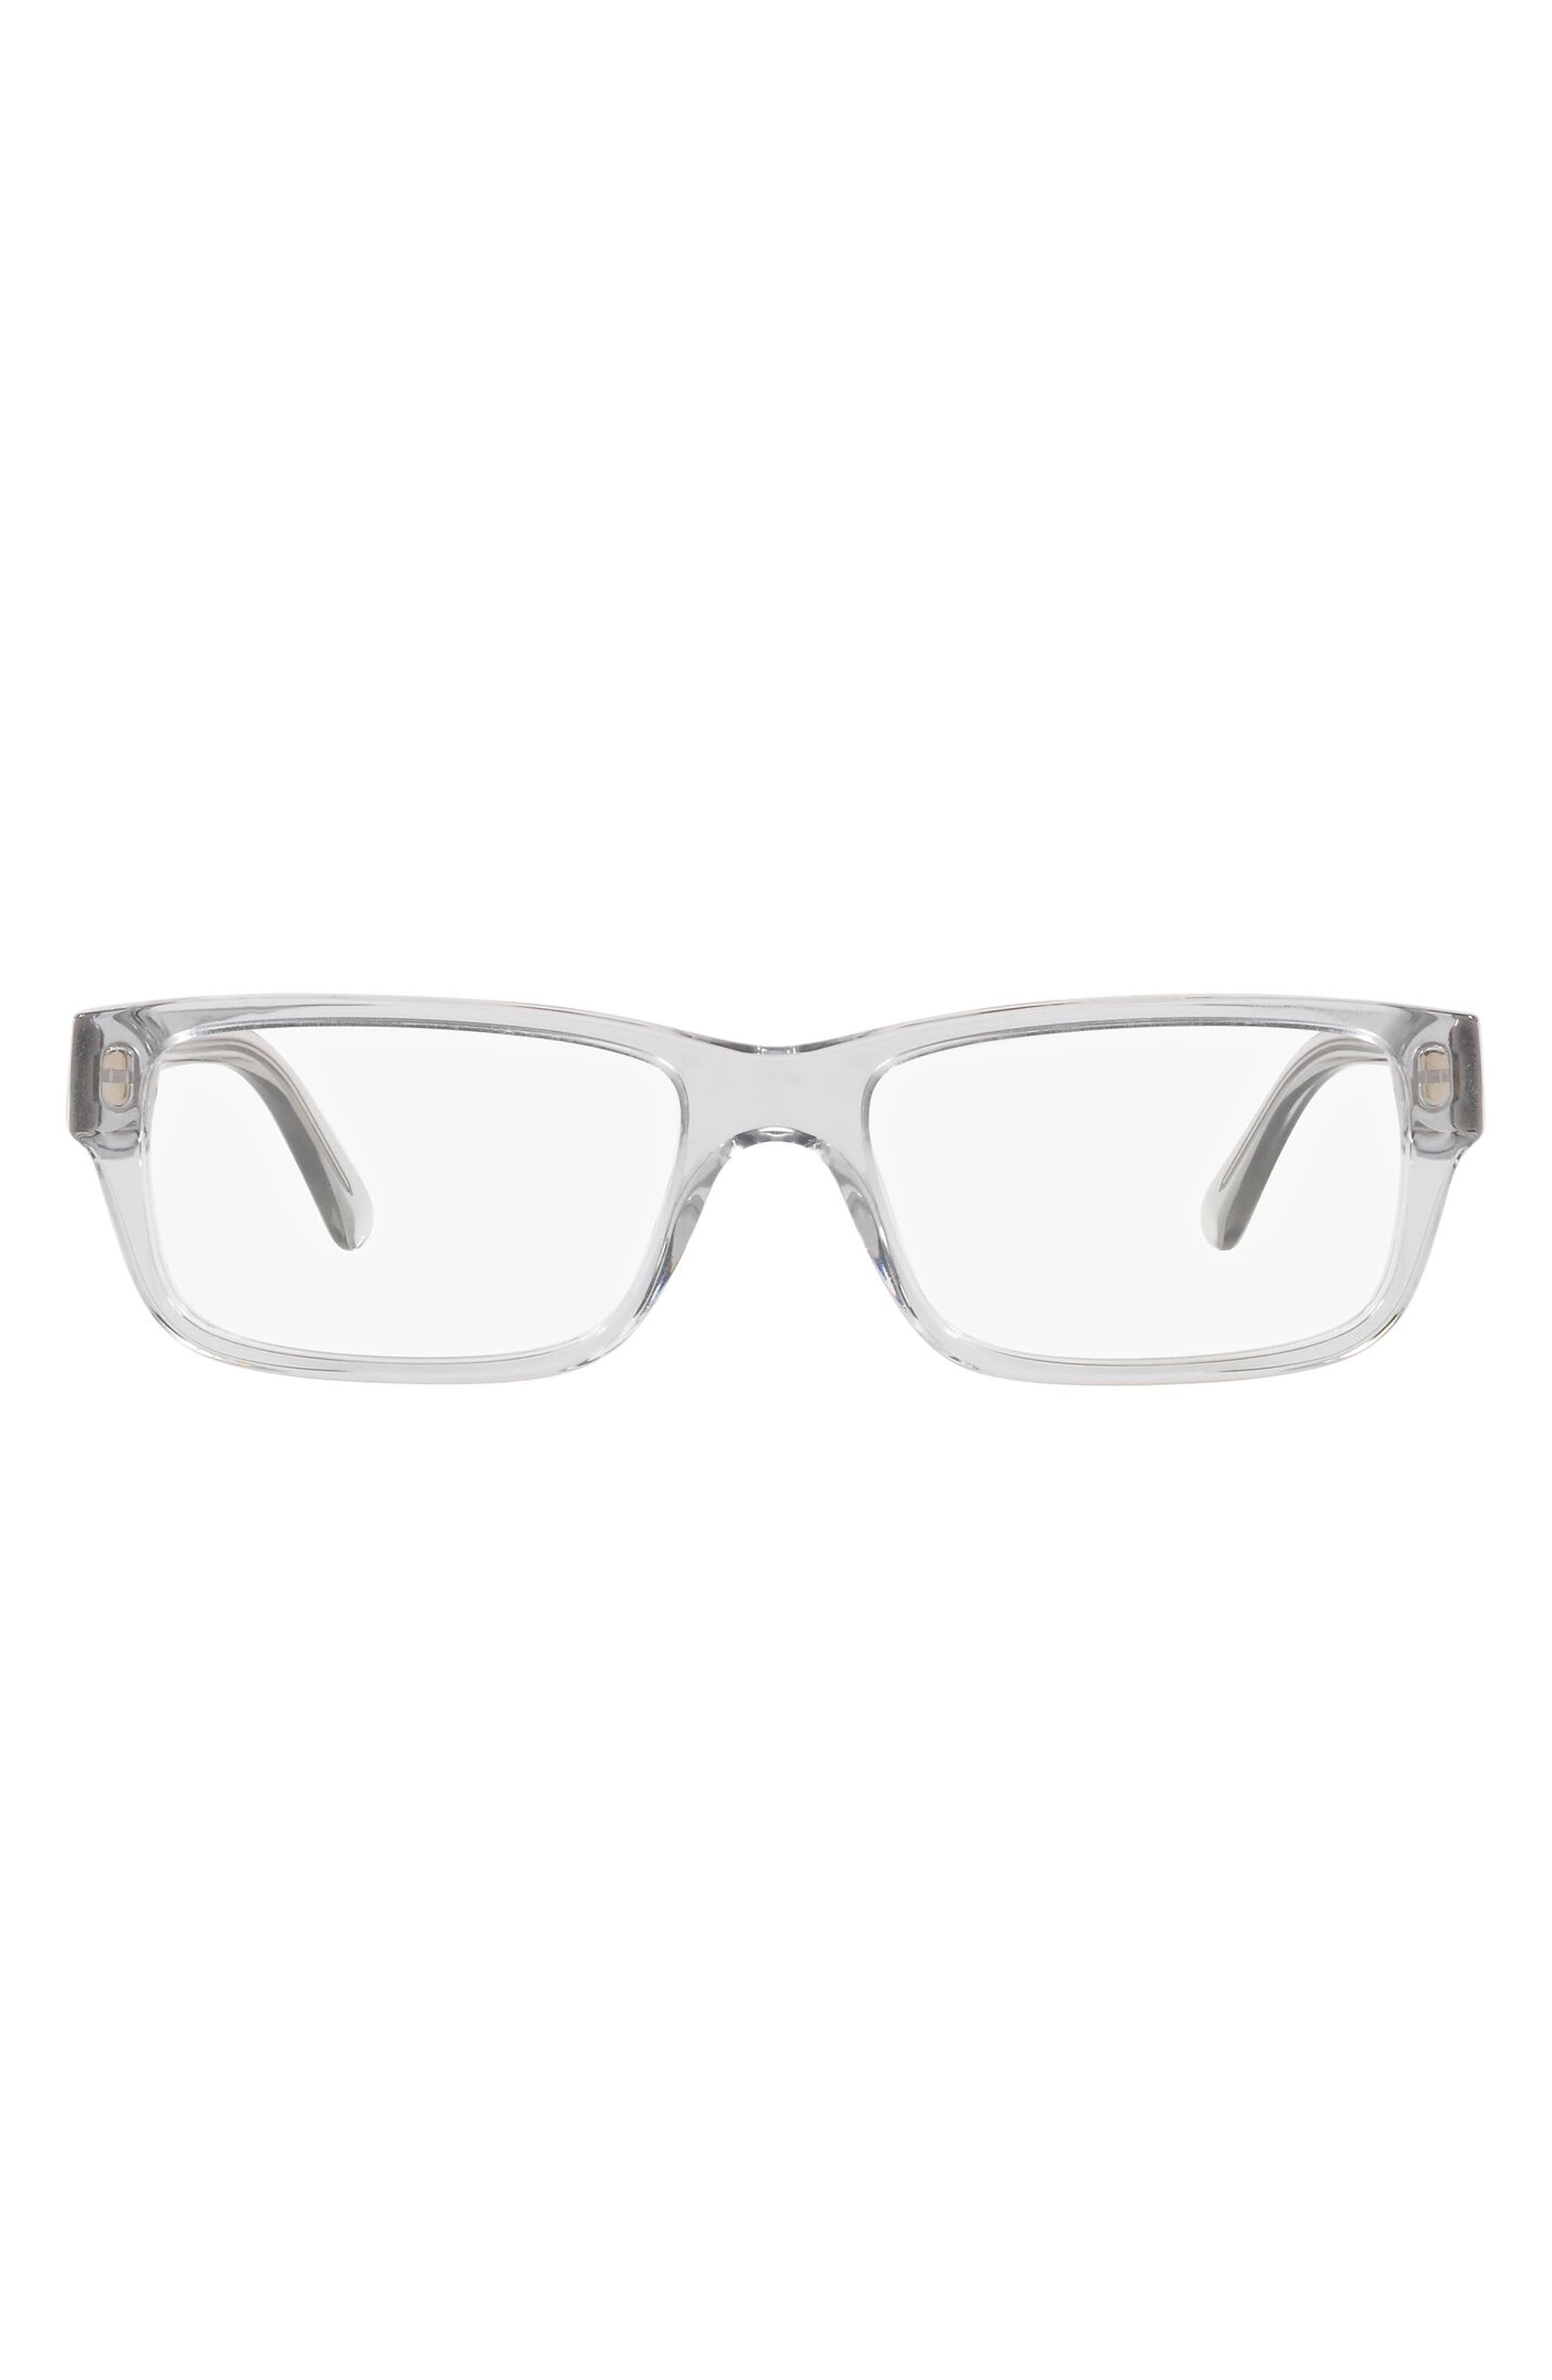 Prada 55mm Rectangular Optical Glasses in Grey at Nordstrom